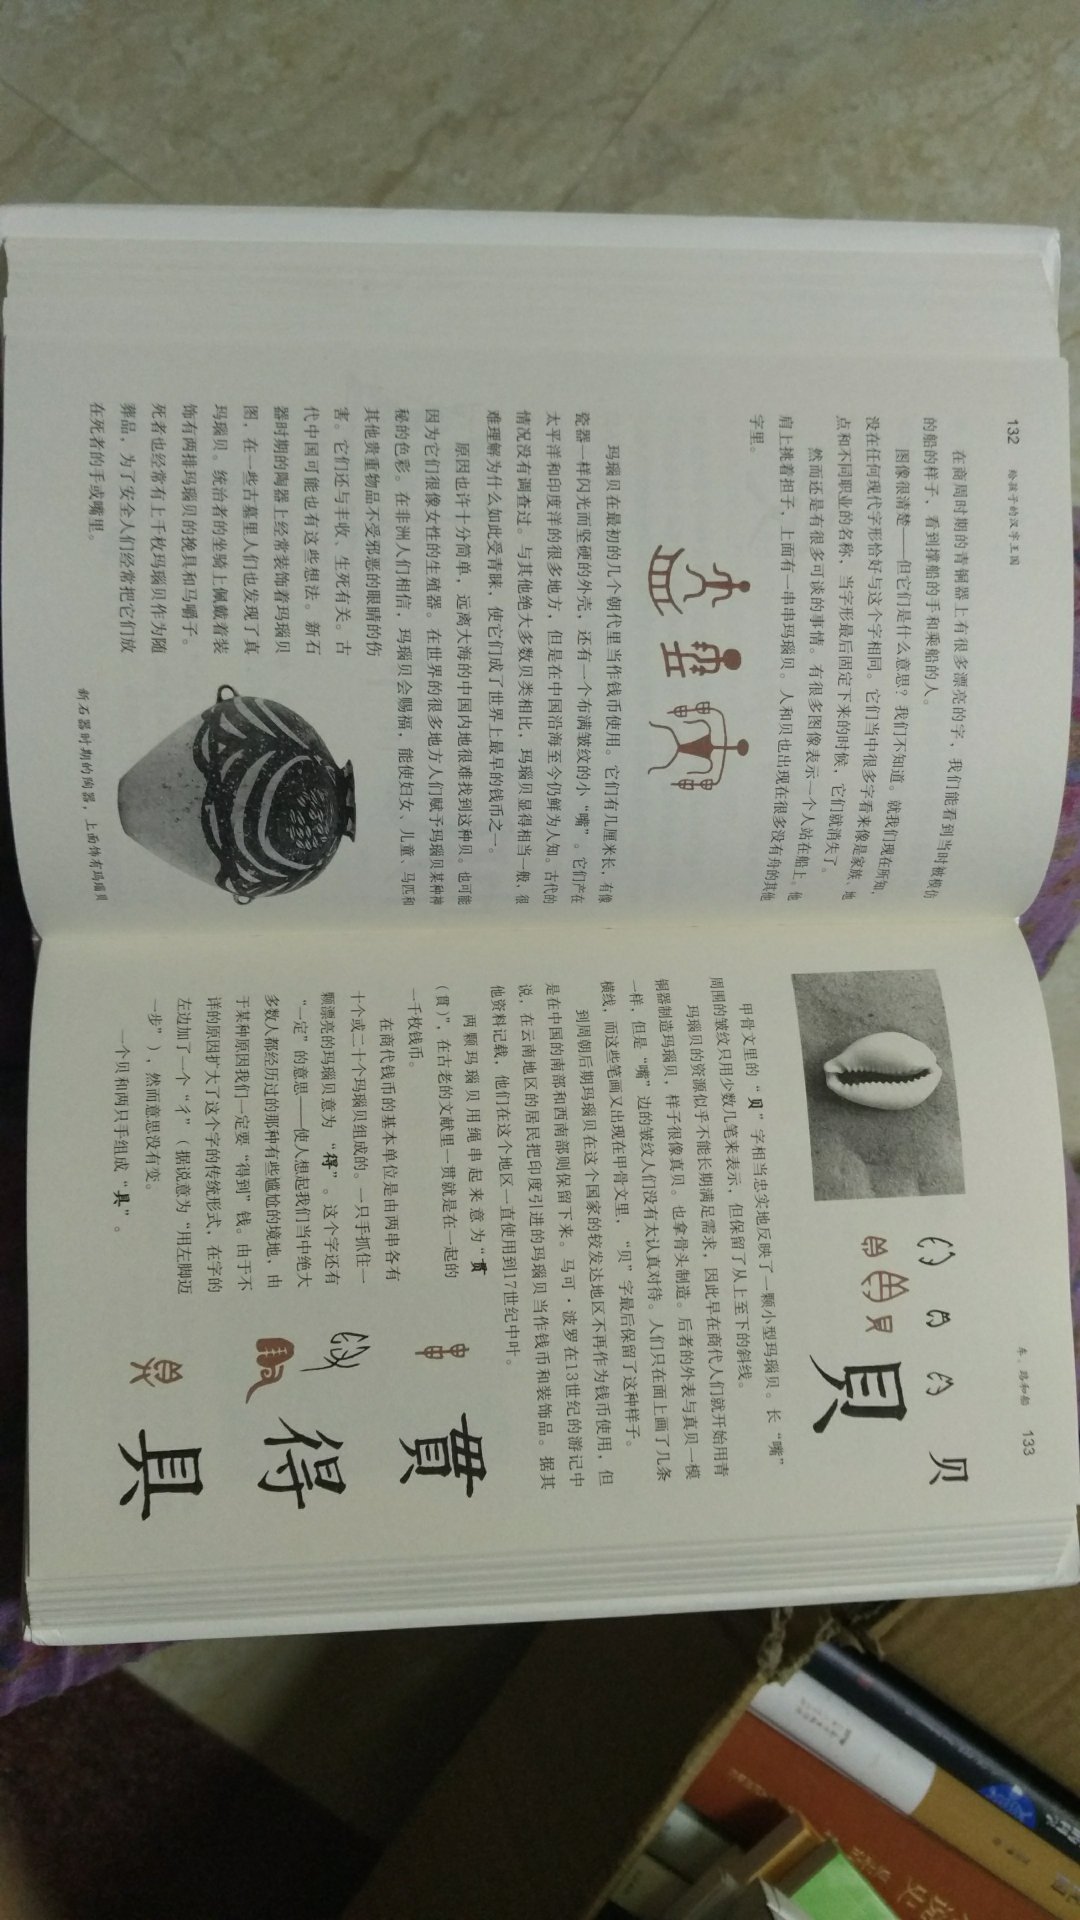 内虽然是外国人写的汉字研究成果，但对很多普通中国人来说，这里面的内容也是很令人开眼界，且很有趣的。可惜翻译出来一般，一看就是“翻译”的那种翻译水平而已。